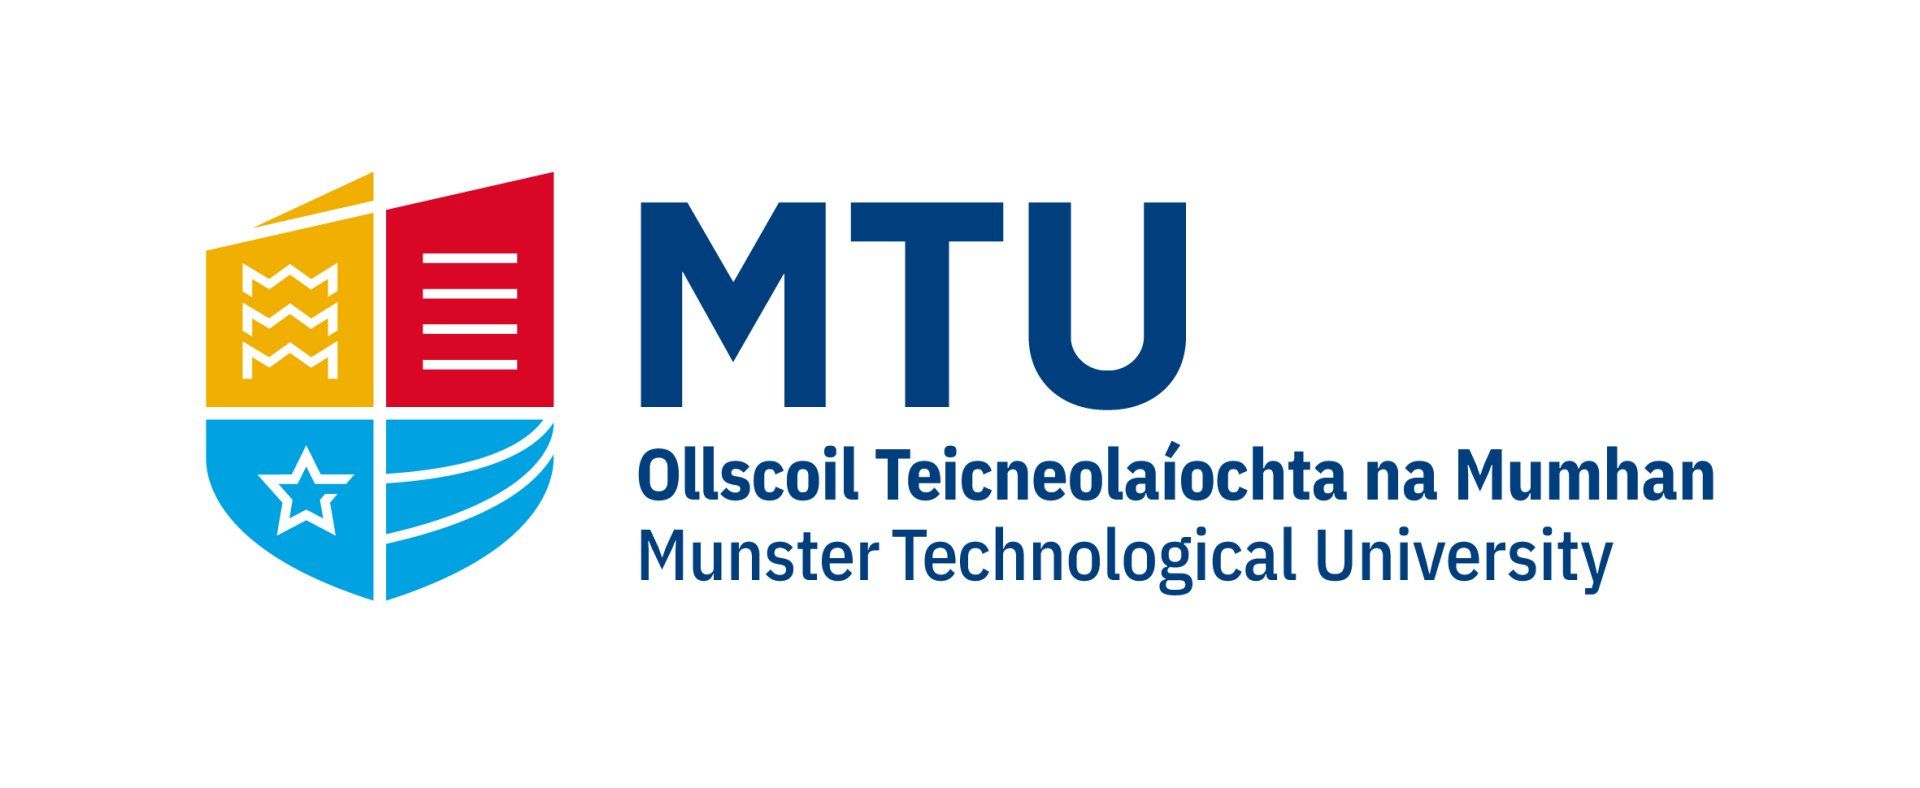 Munster Technological University: Cork